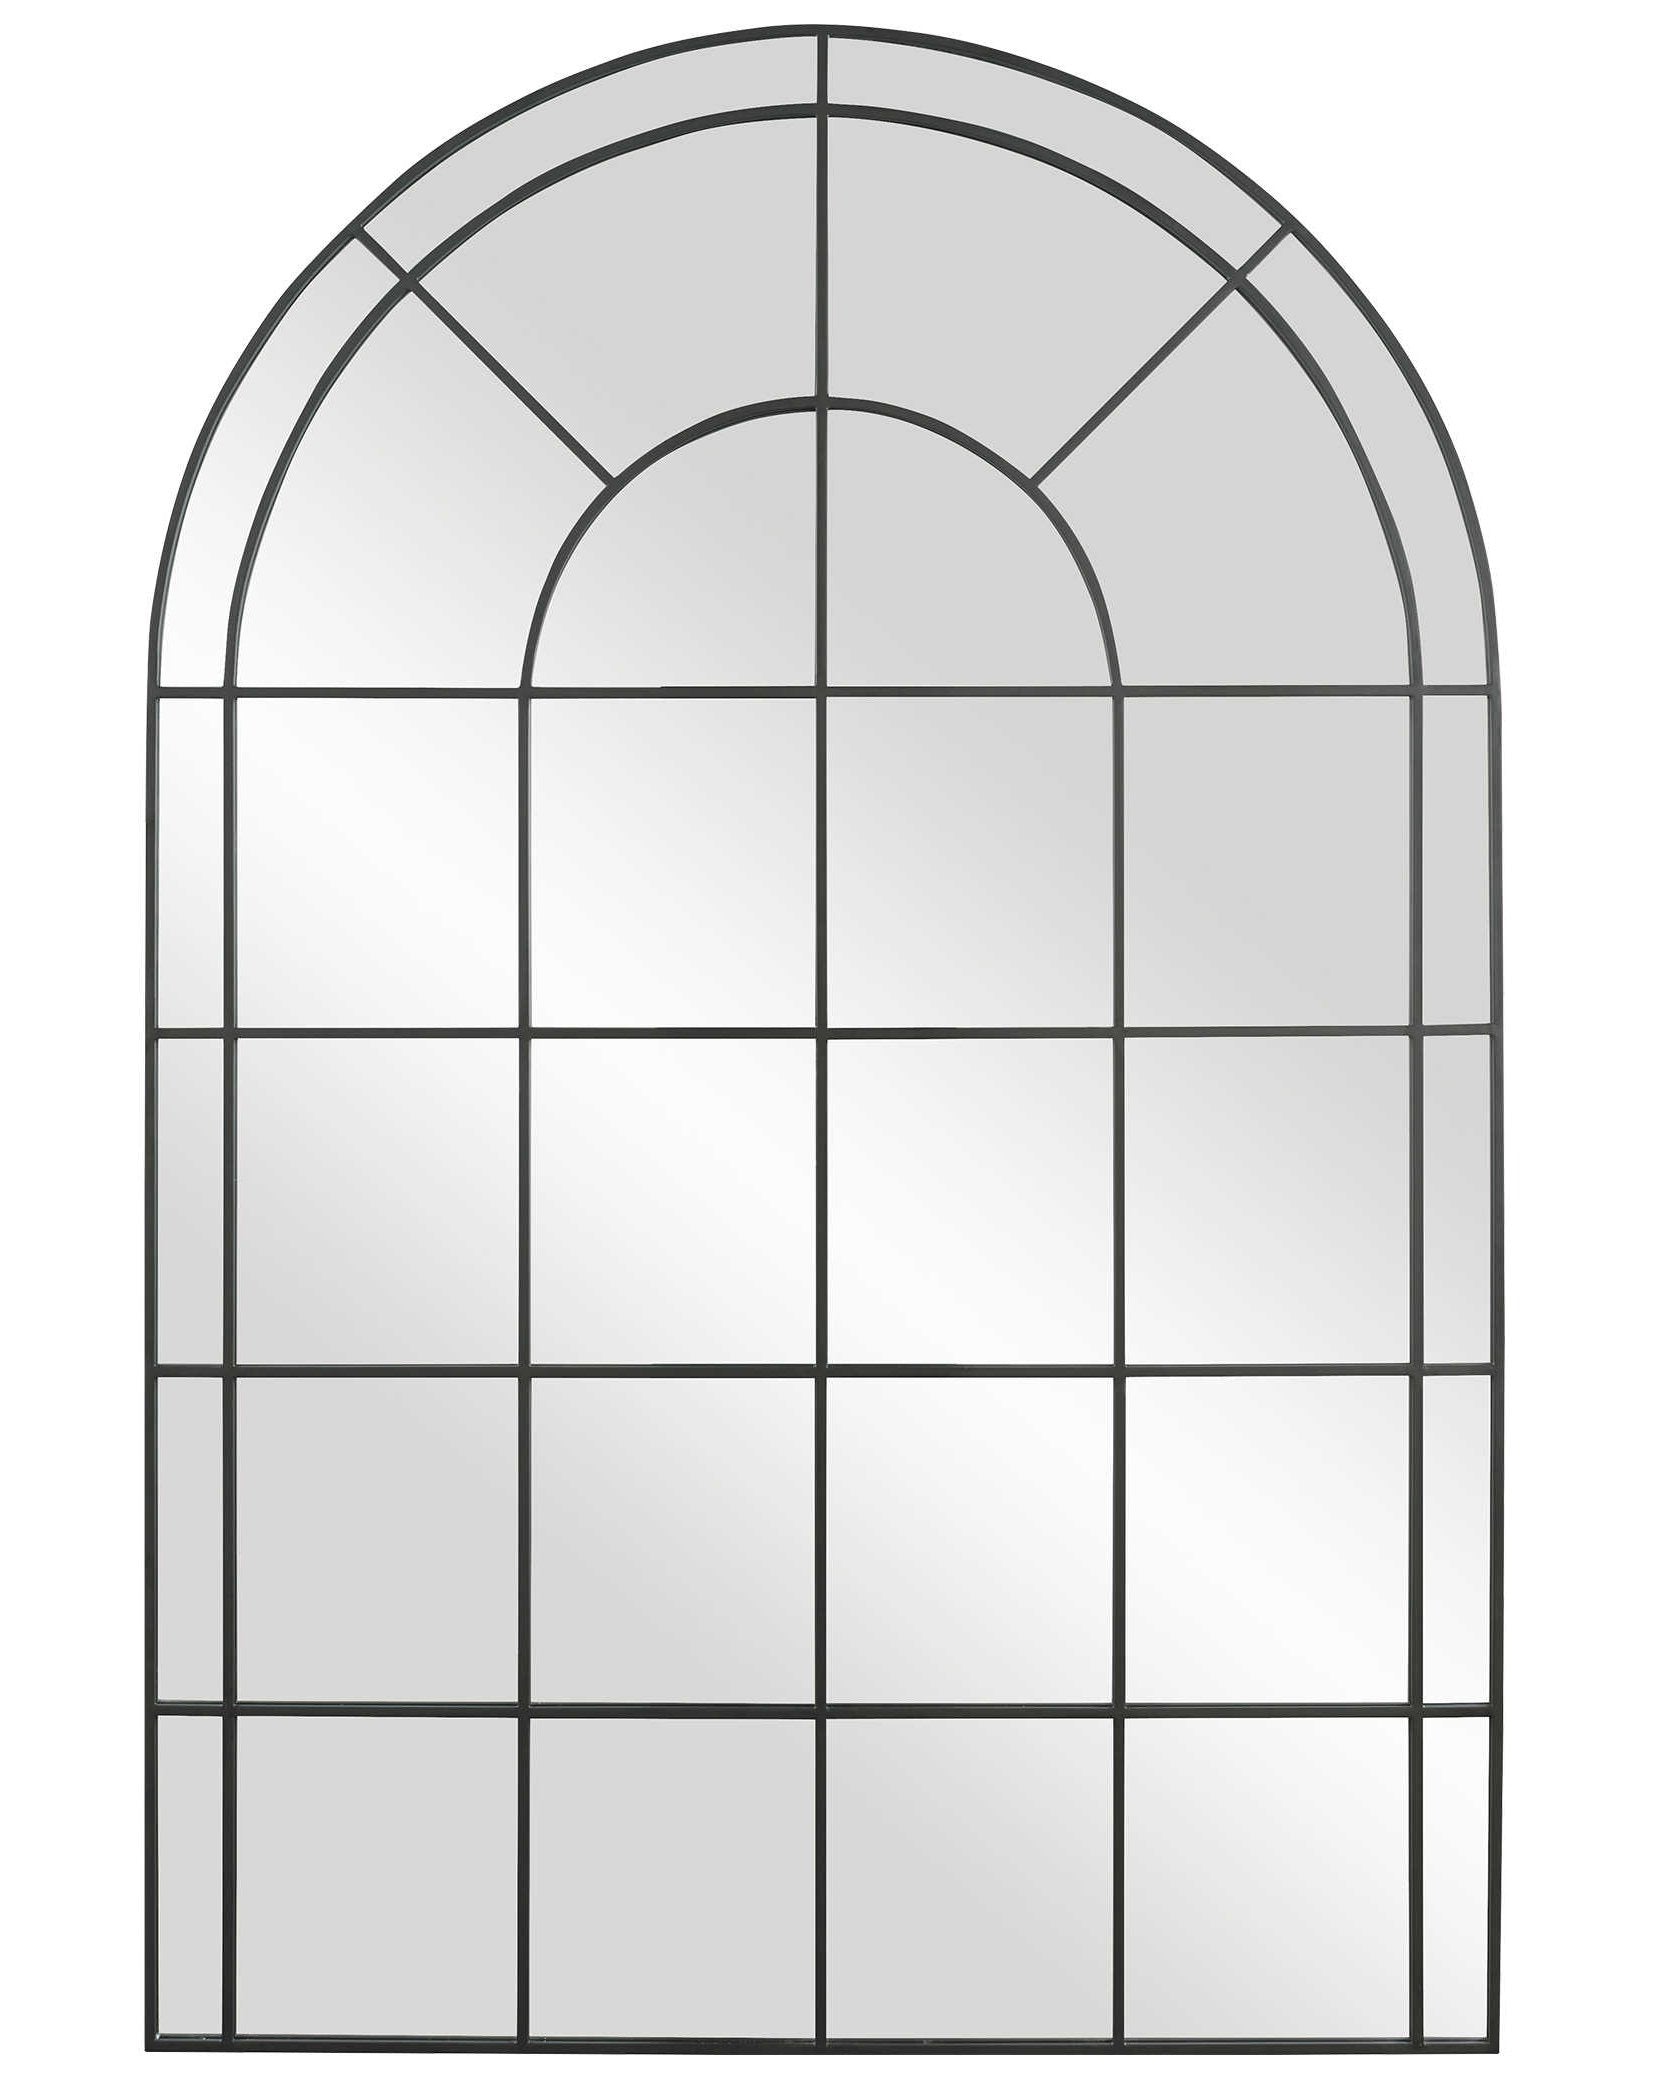 Напольное зеркало "Бишоп" в арочной форме окна чёрного цвета